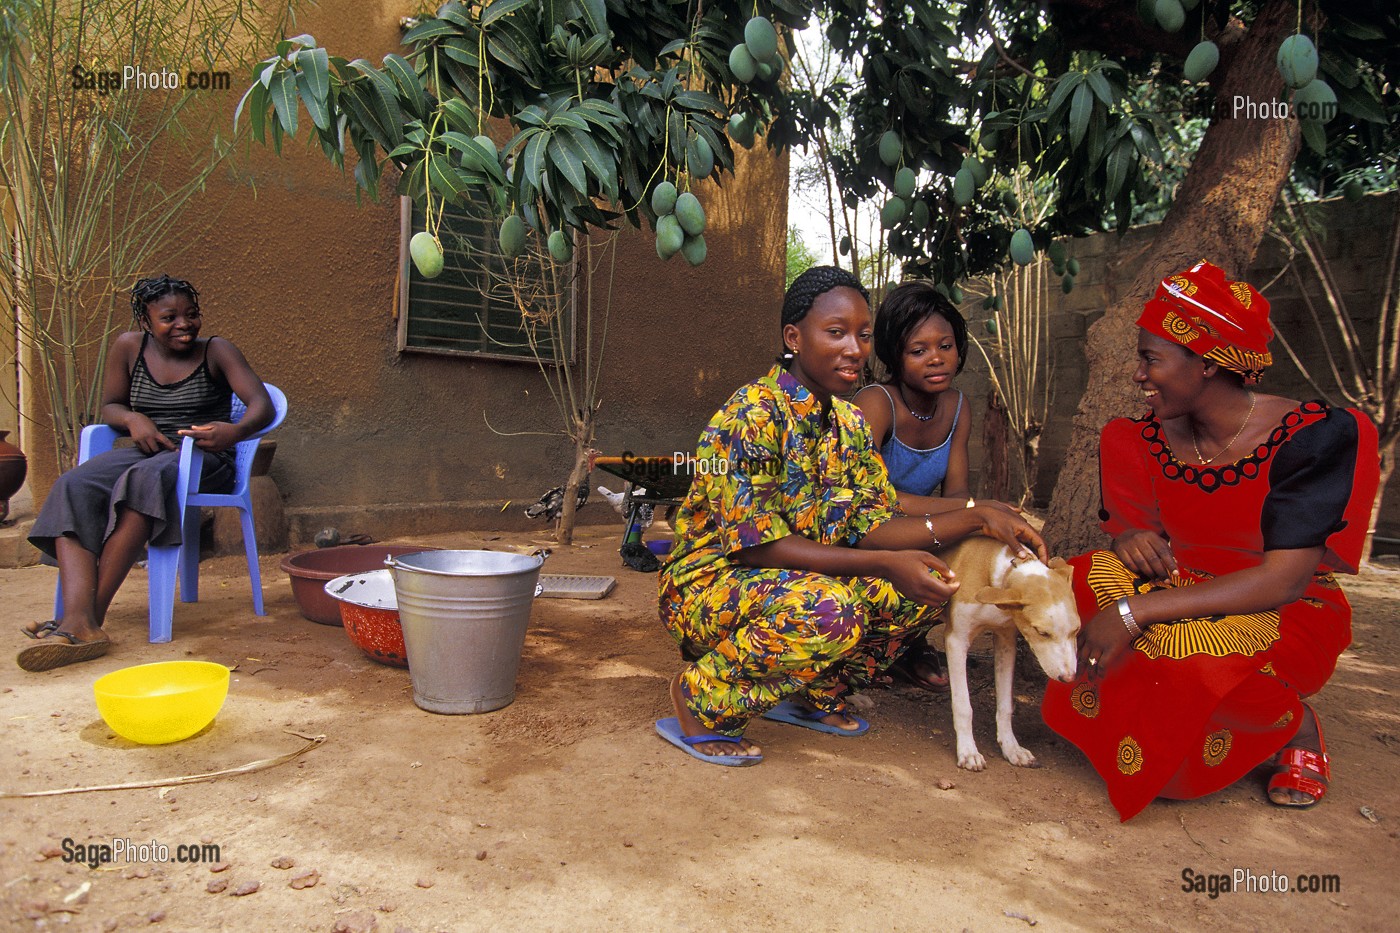 FEMMES ET ENFANTS DANS LA COUR DE LEUR MAISON, HABITAT LOCAL, BOBO-DIOULASSO, BURKINA FASO 